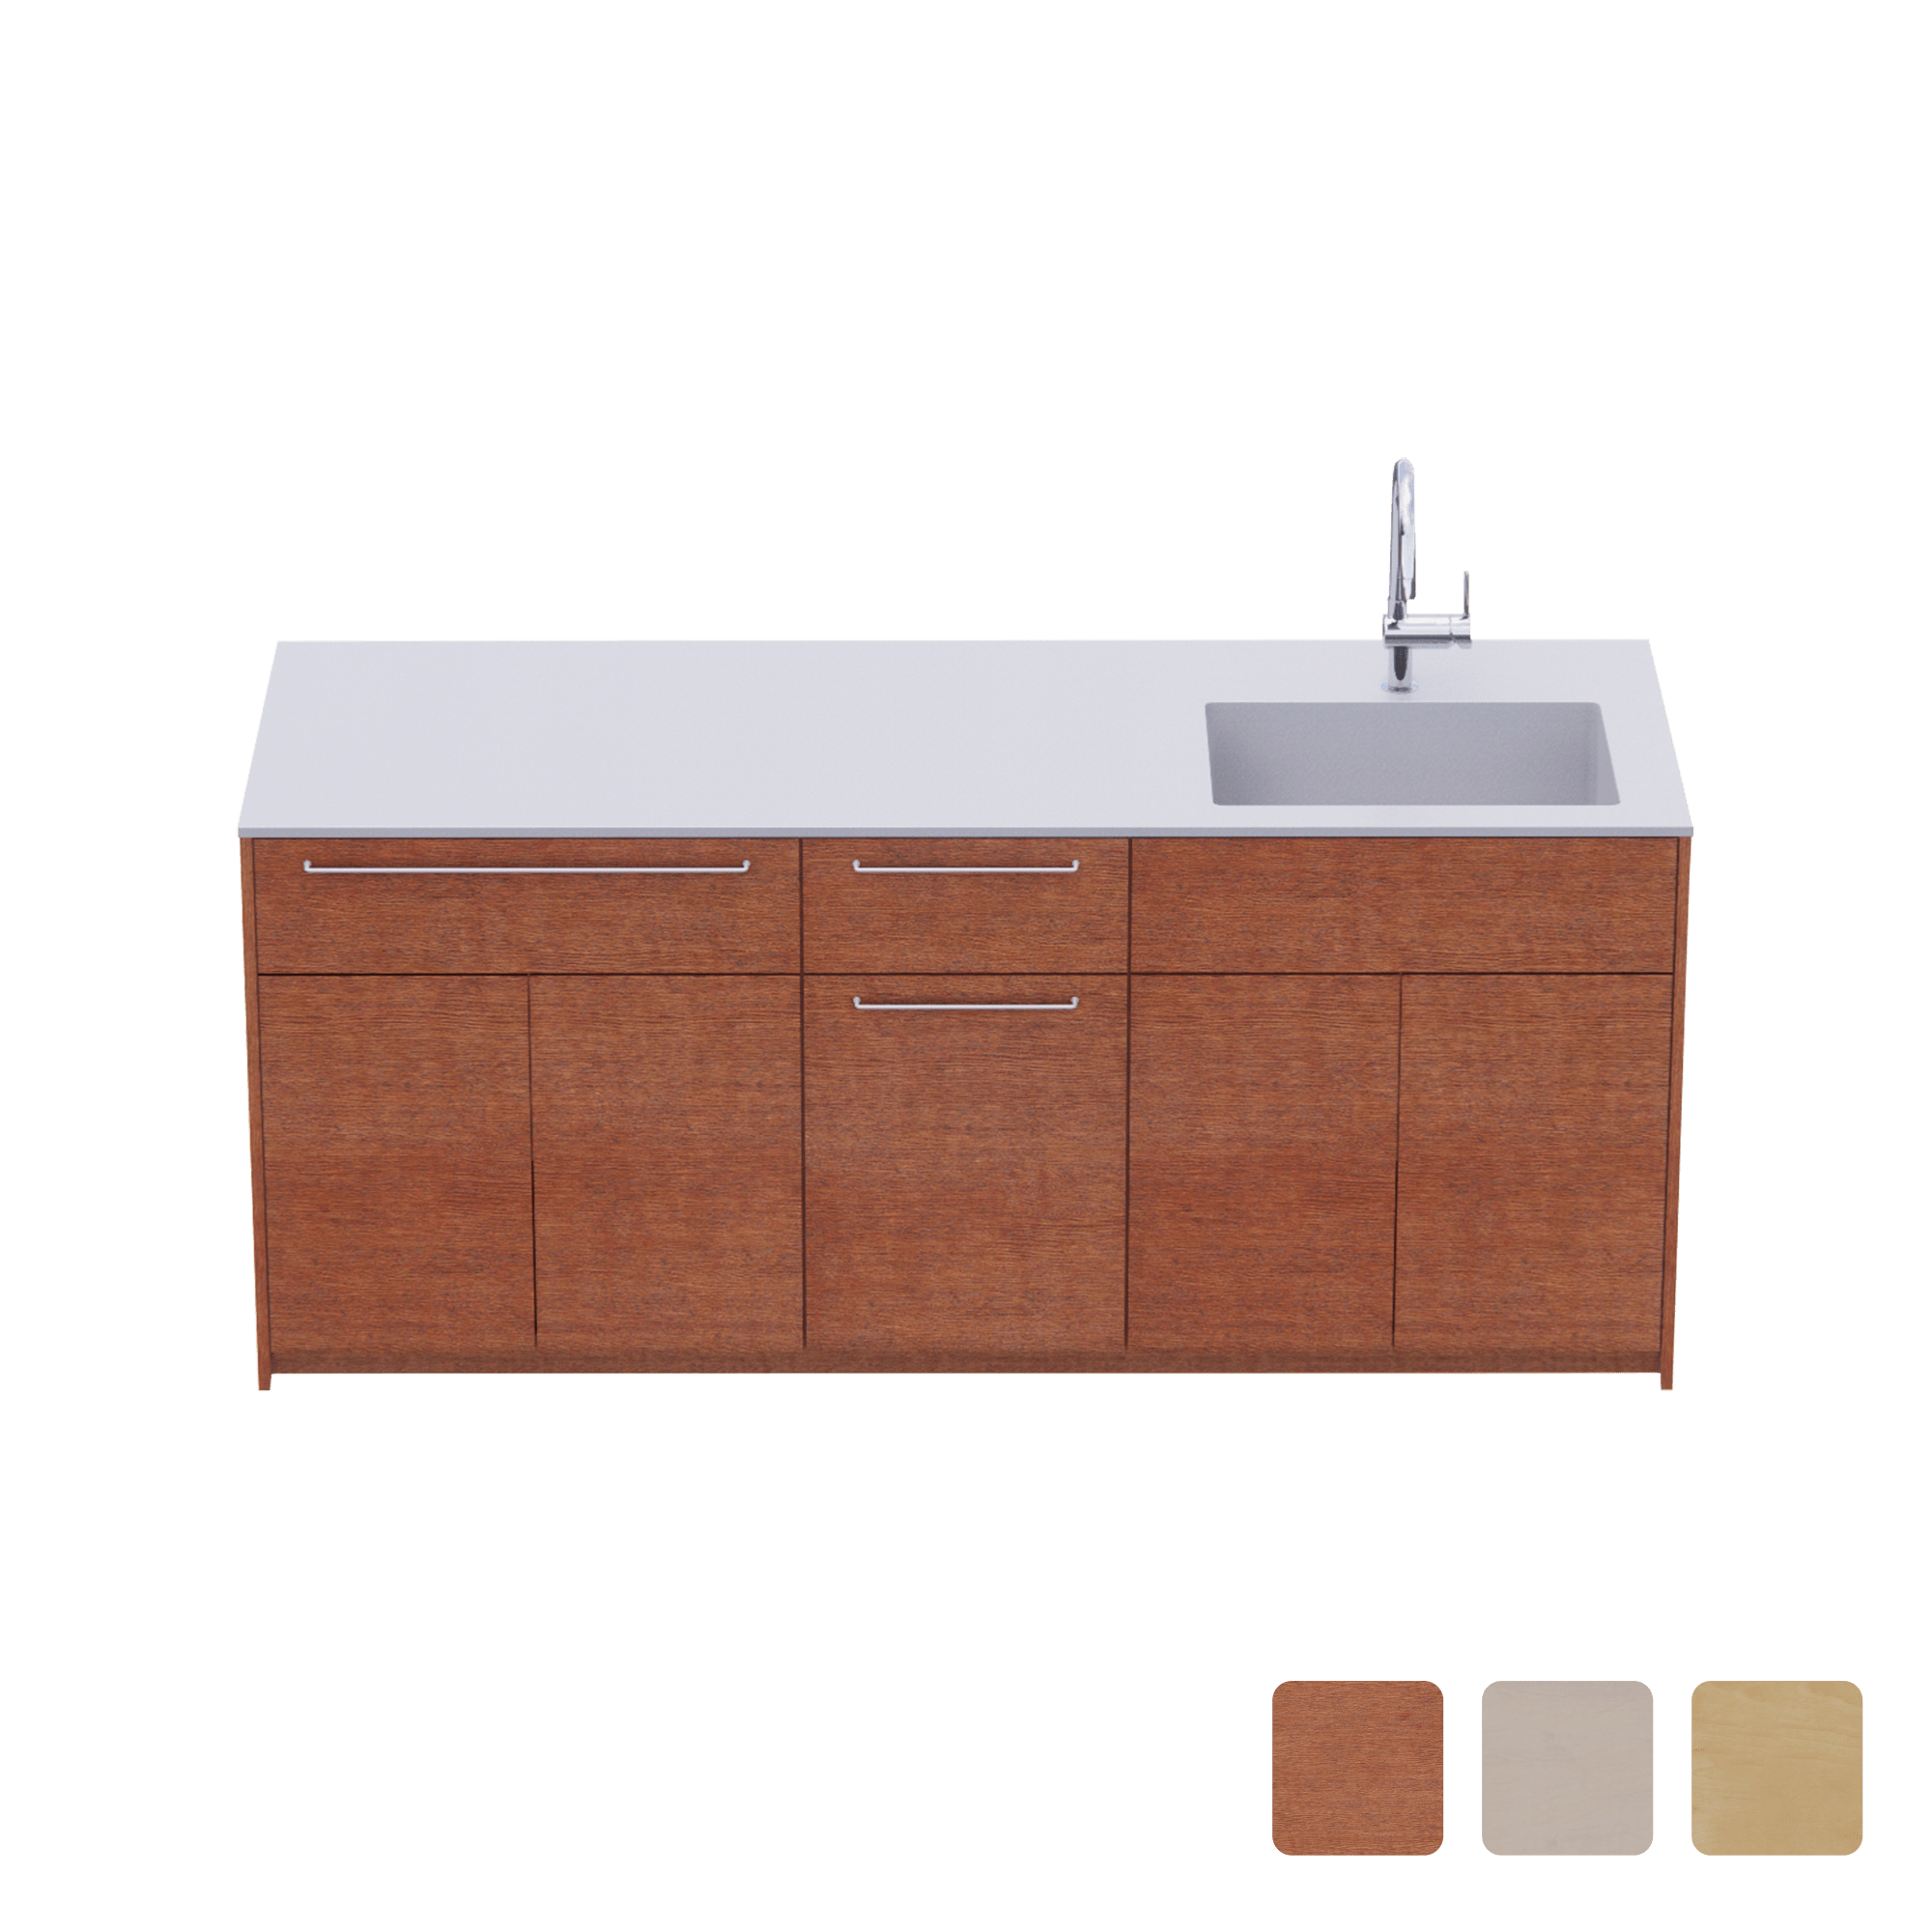 木製システムキッチン 対面型 W1990・コンロなし / オーブンなし / 食洗機なし